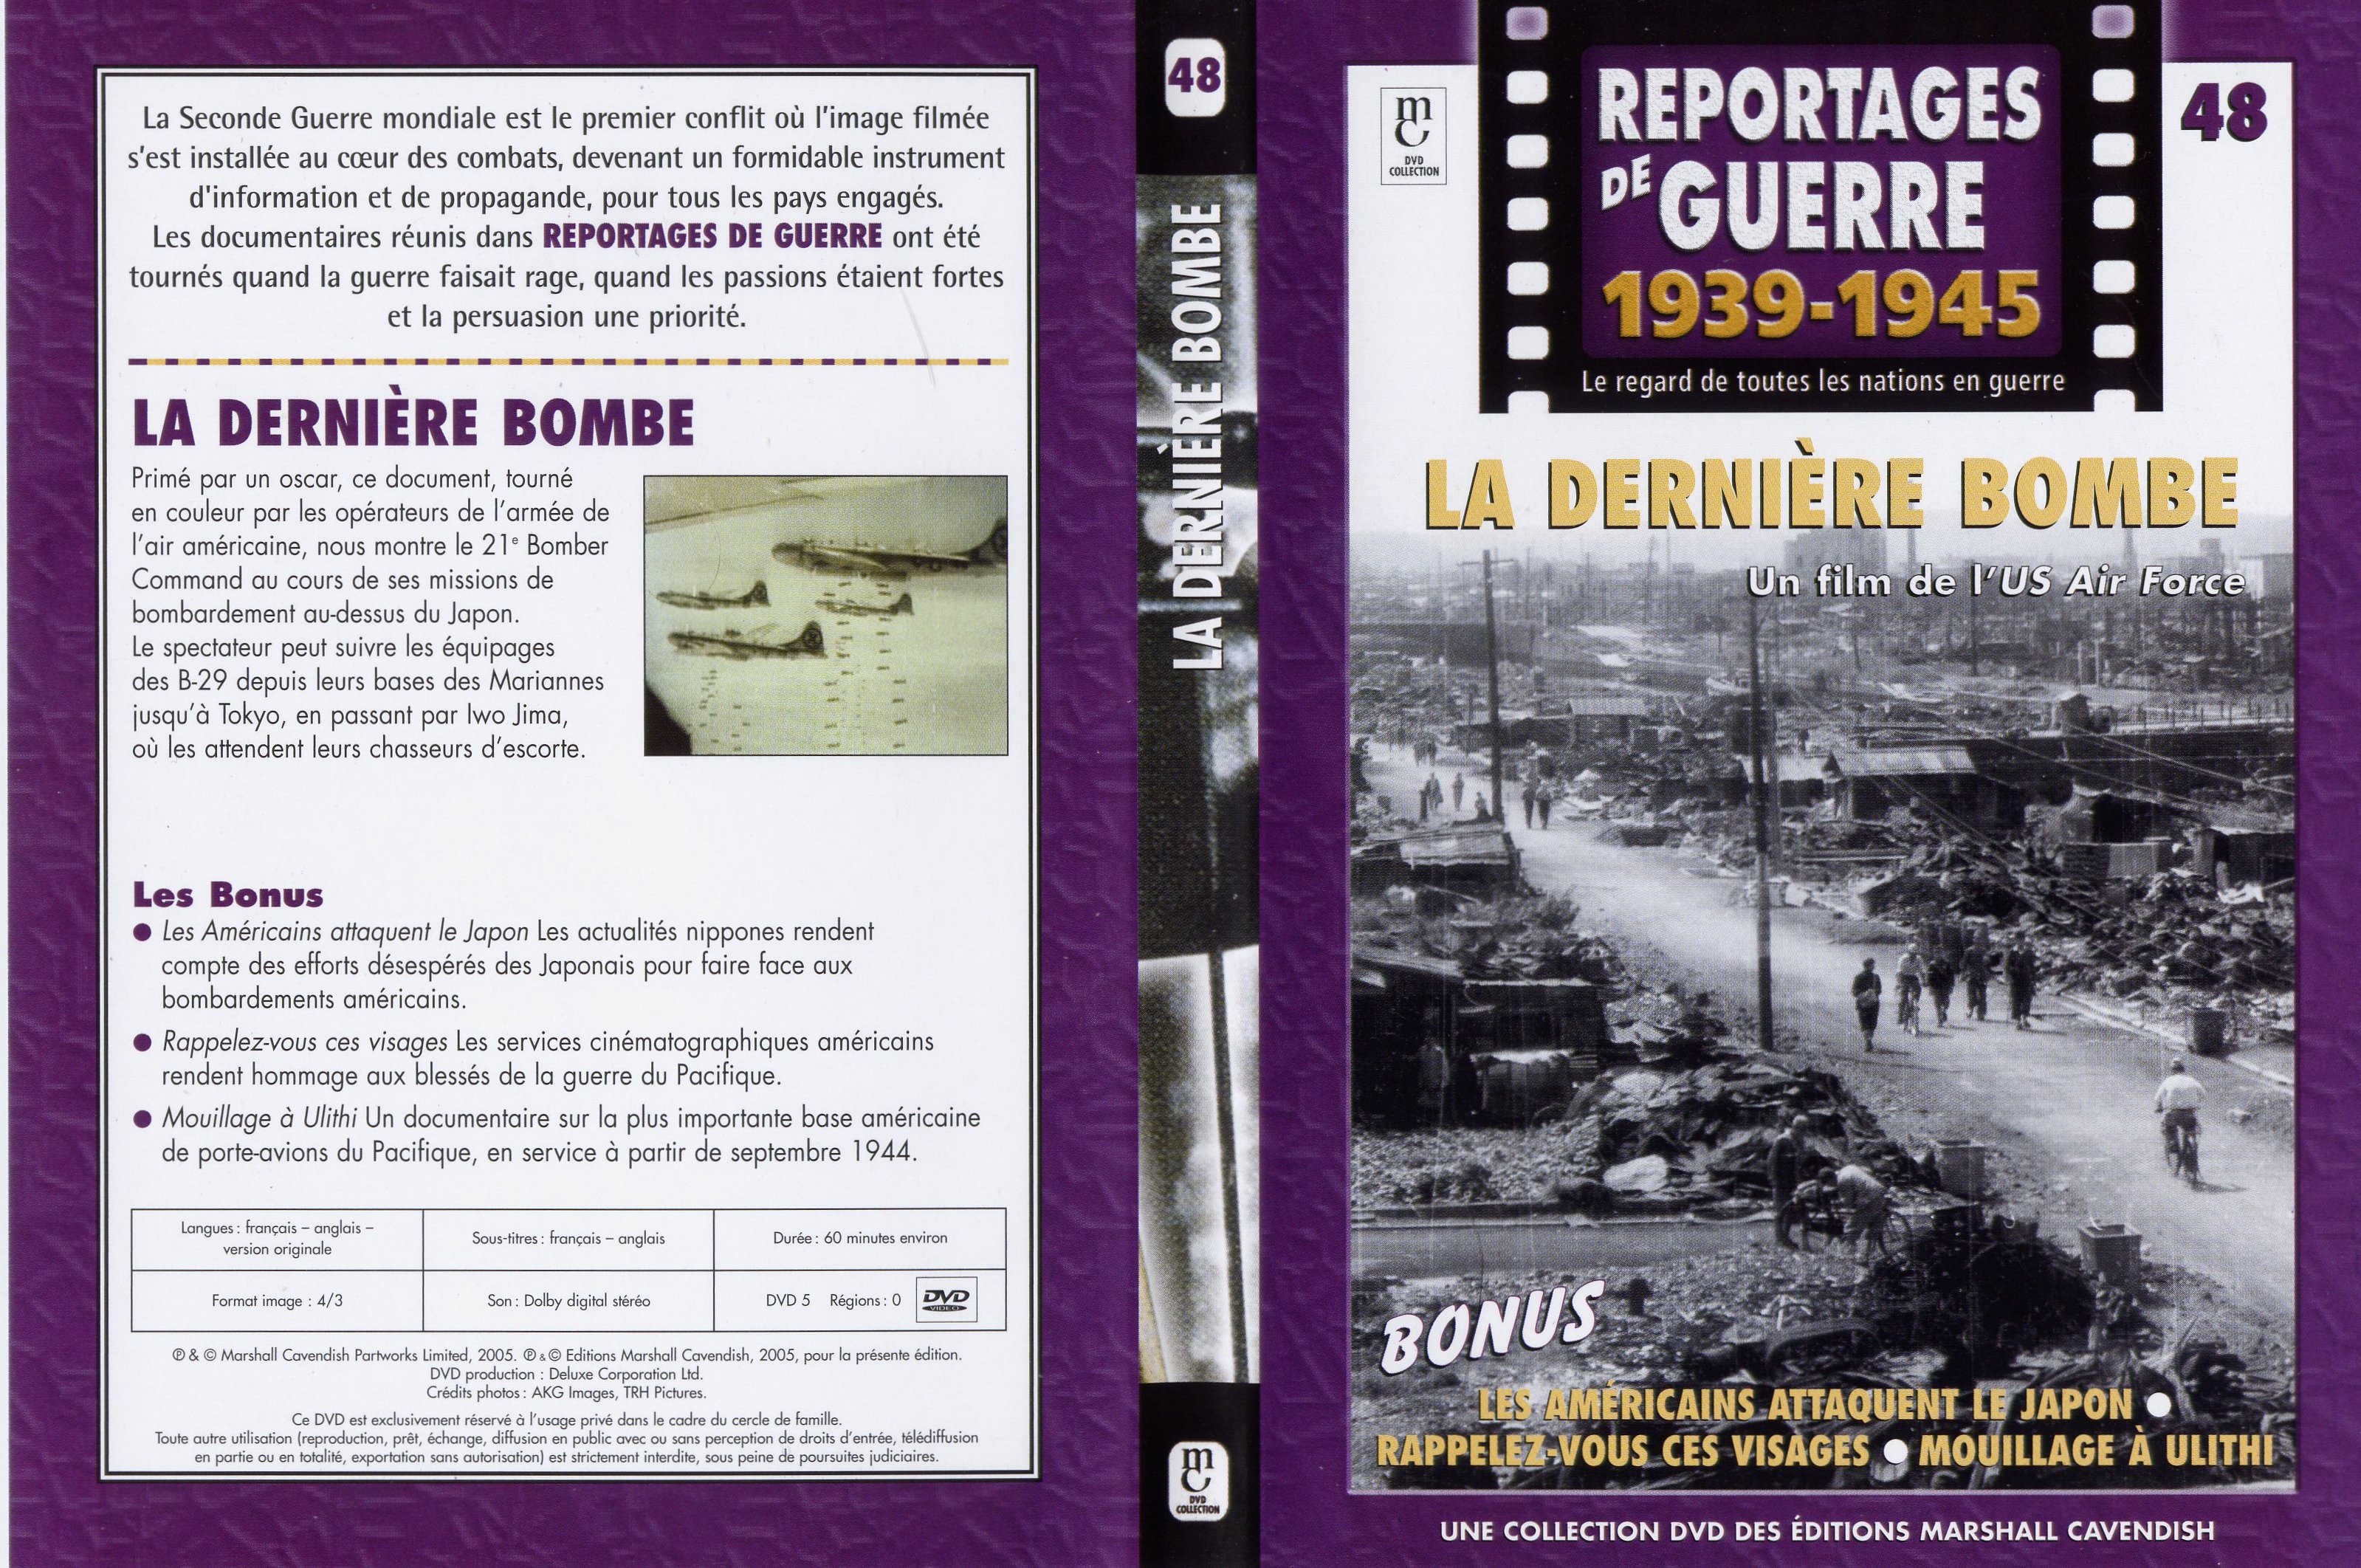 Jaquette DVD Reportages de guerre vol 48